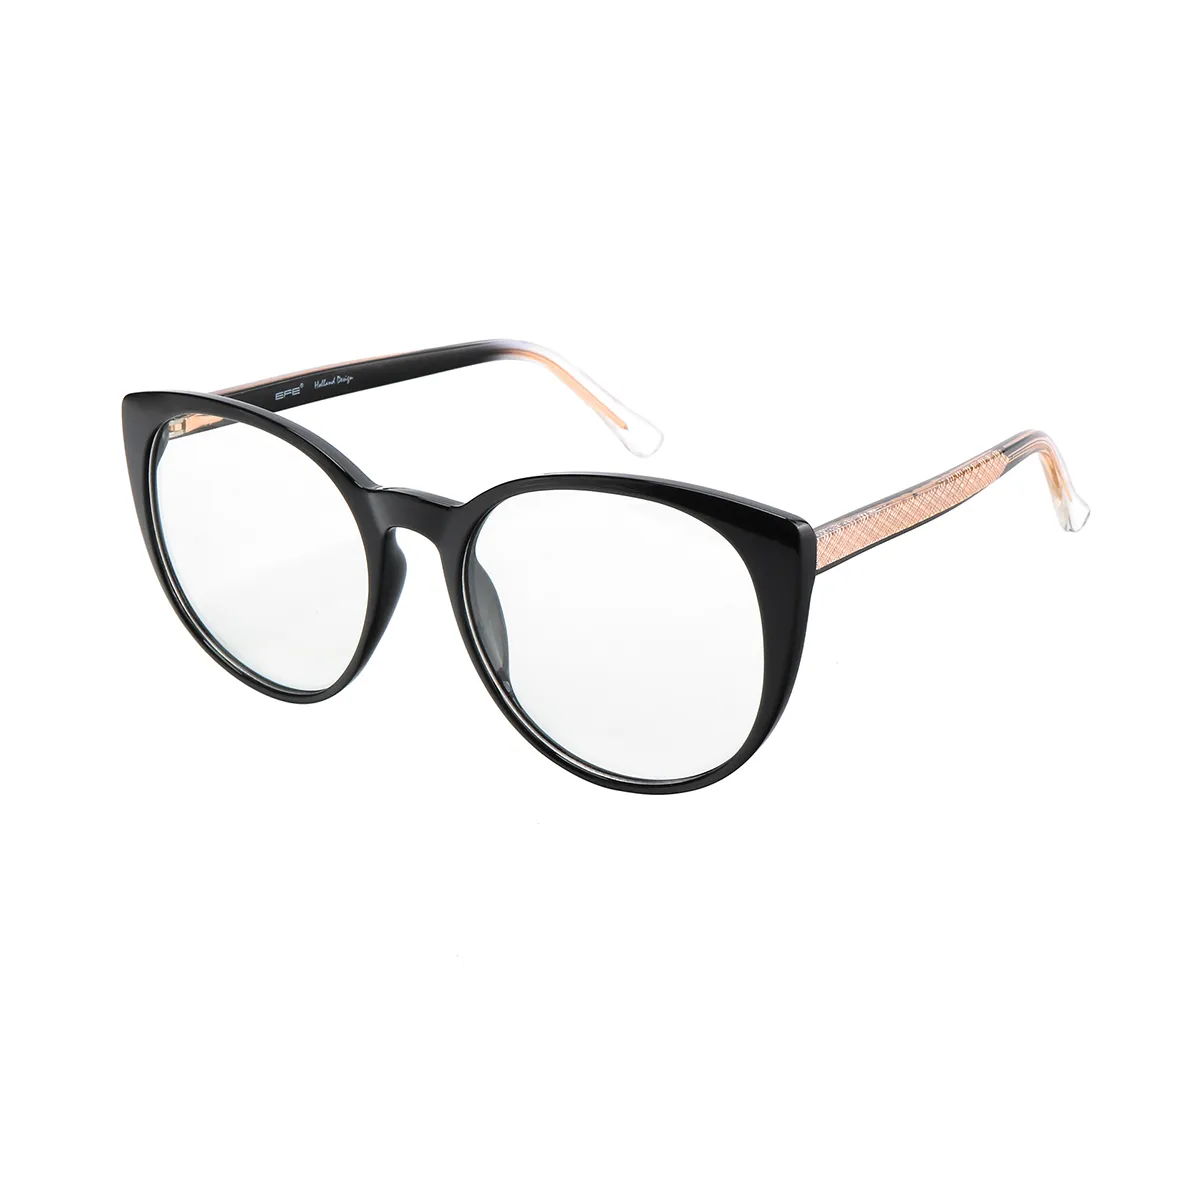 Kirsten - Oval Black Glasses for Women - EFE